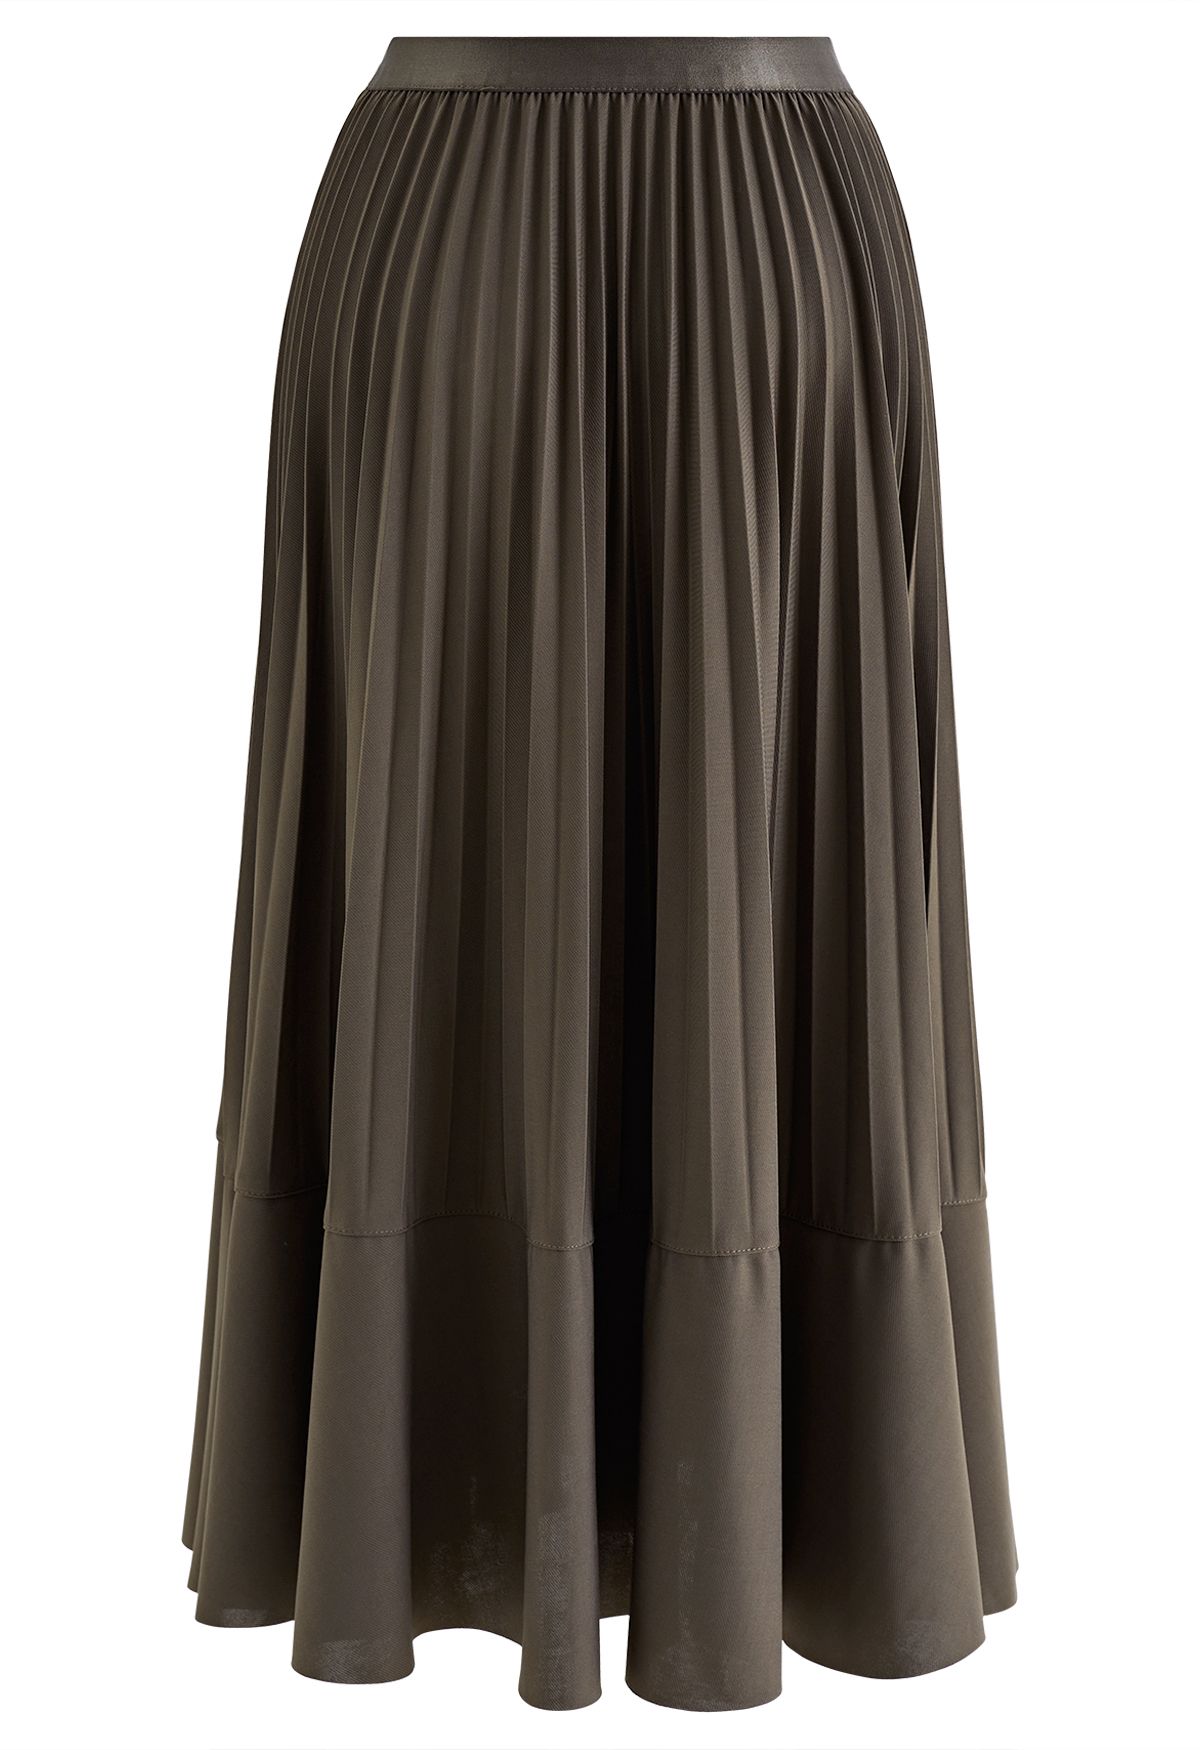 Falda midi plisada con detalle de costuras en caqui oscuro